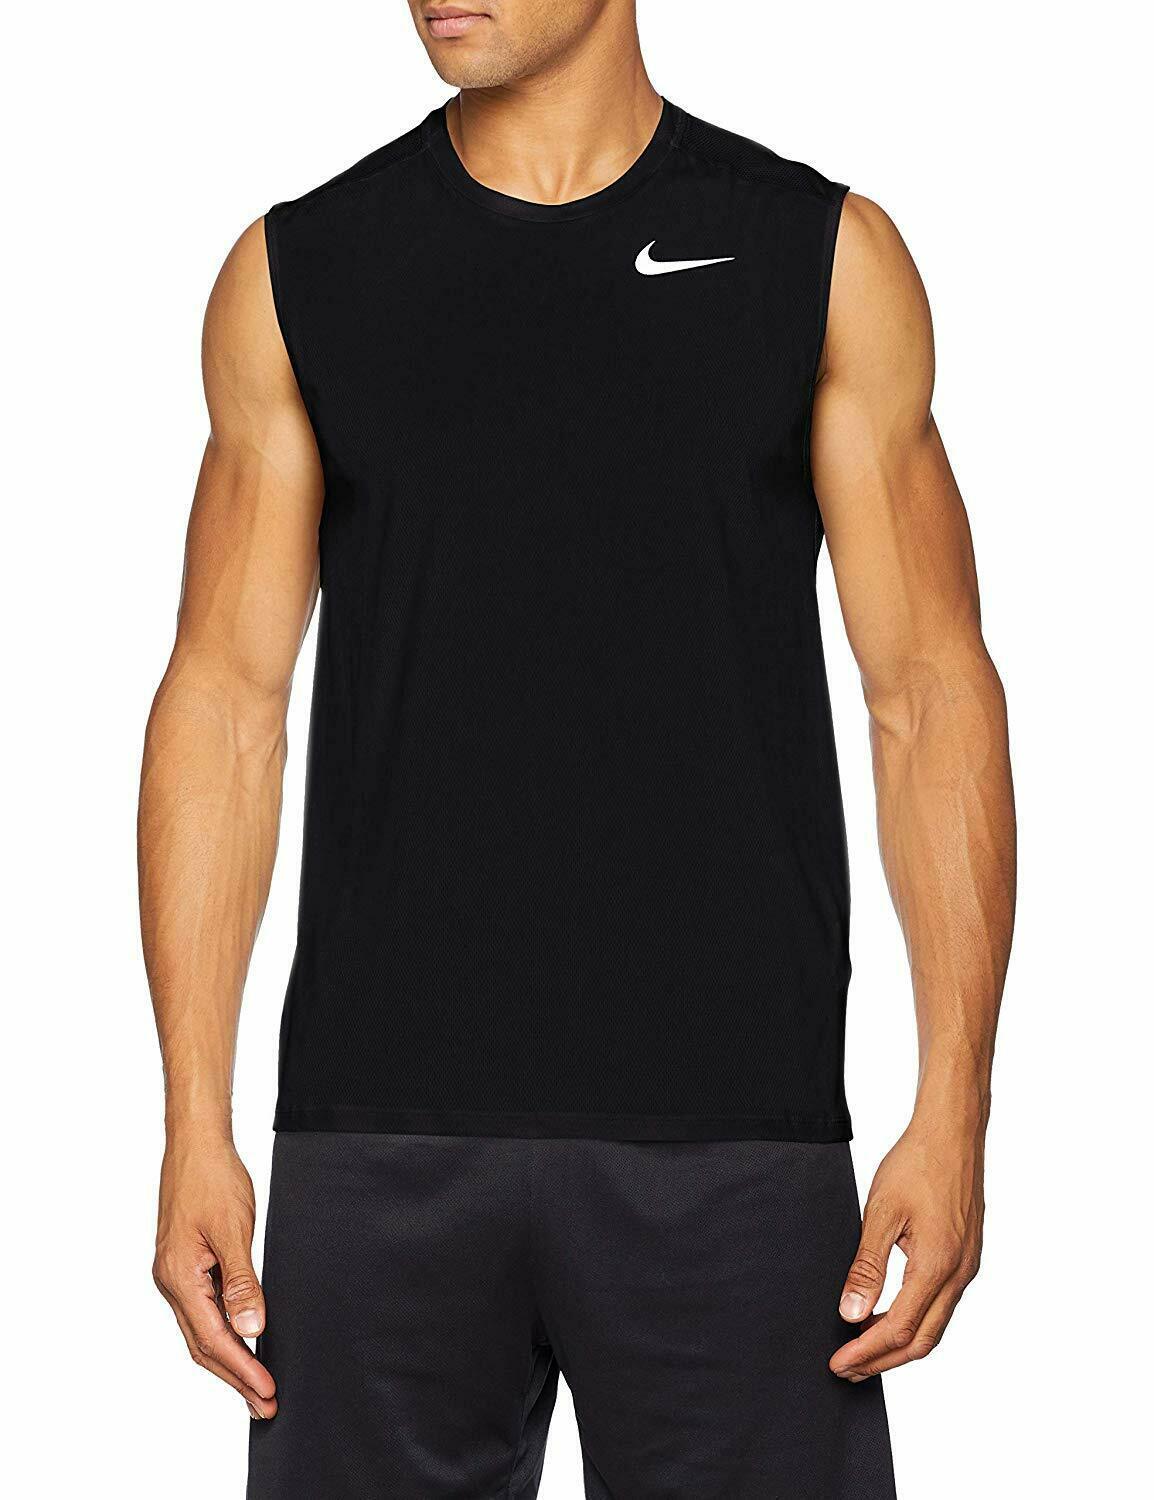 New Nike Men's Breathe Sleeveless Running Shirt 904481-010 Black - Men ...